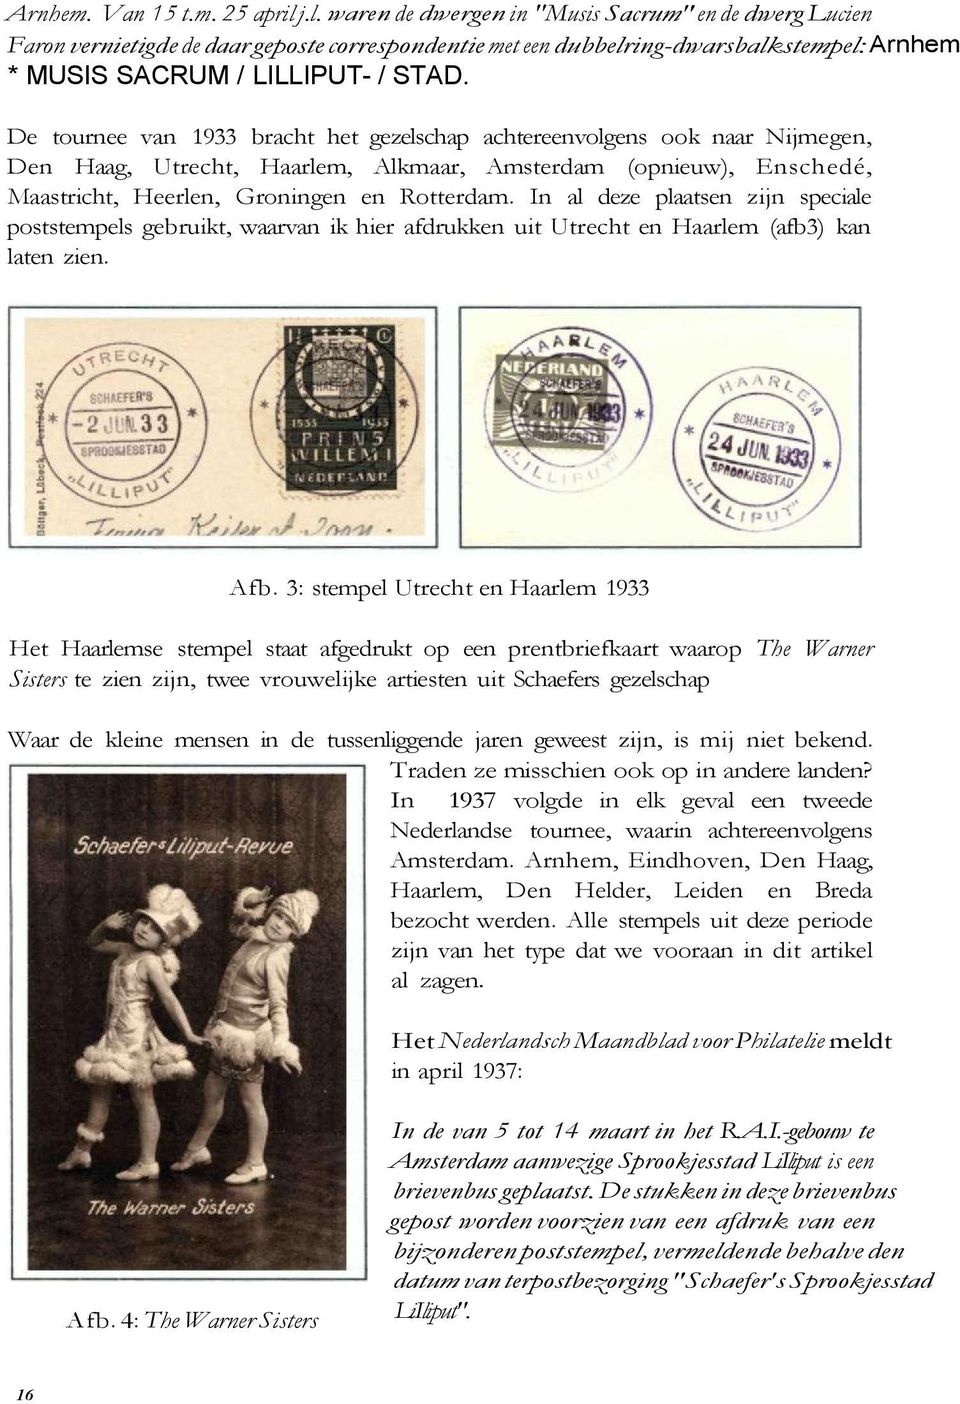 De tournee van 1933 bracht het gezelschap achtereenvolgens ook naar Nijmegen, Den Haag, Utrecht, Haarlem, Alkmaar, Amsterdam (opnieuw), Enschedé, Maastricht, Heerlen, Groningen en Rotterdam.